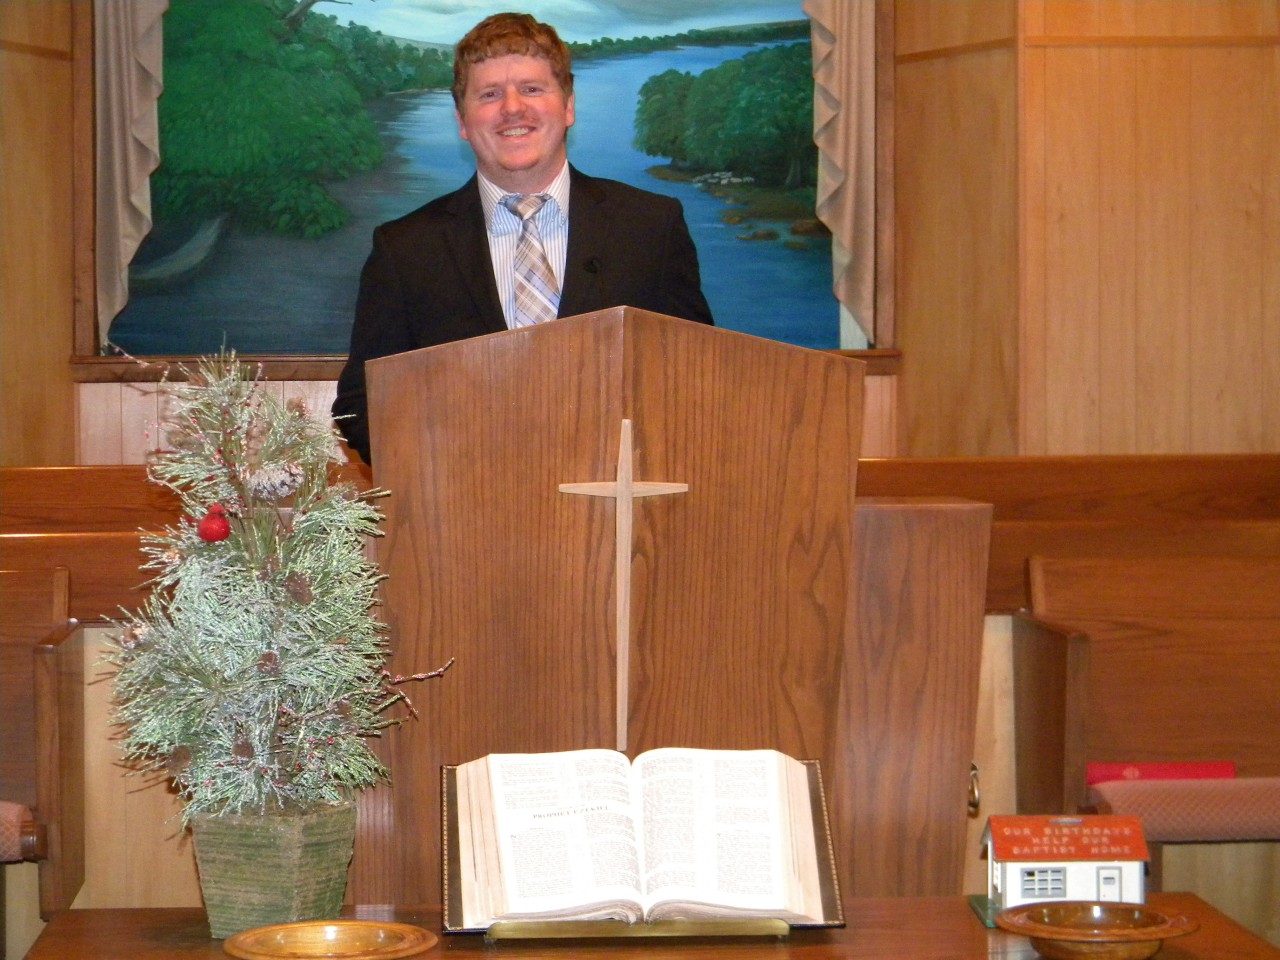 Donnie Hazlewood began serving as Longwood’s pastor in September 2012.